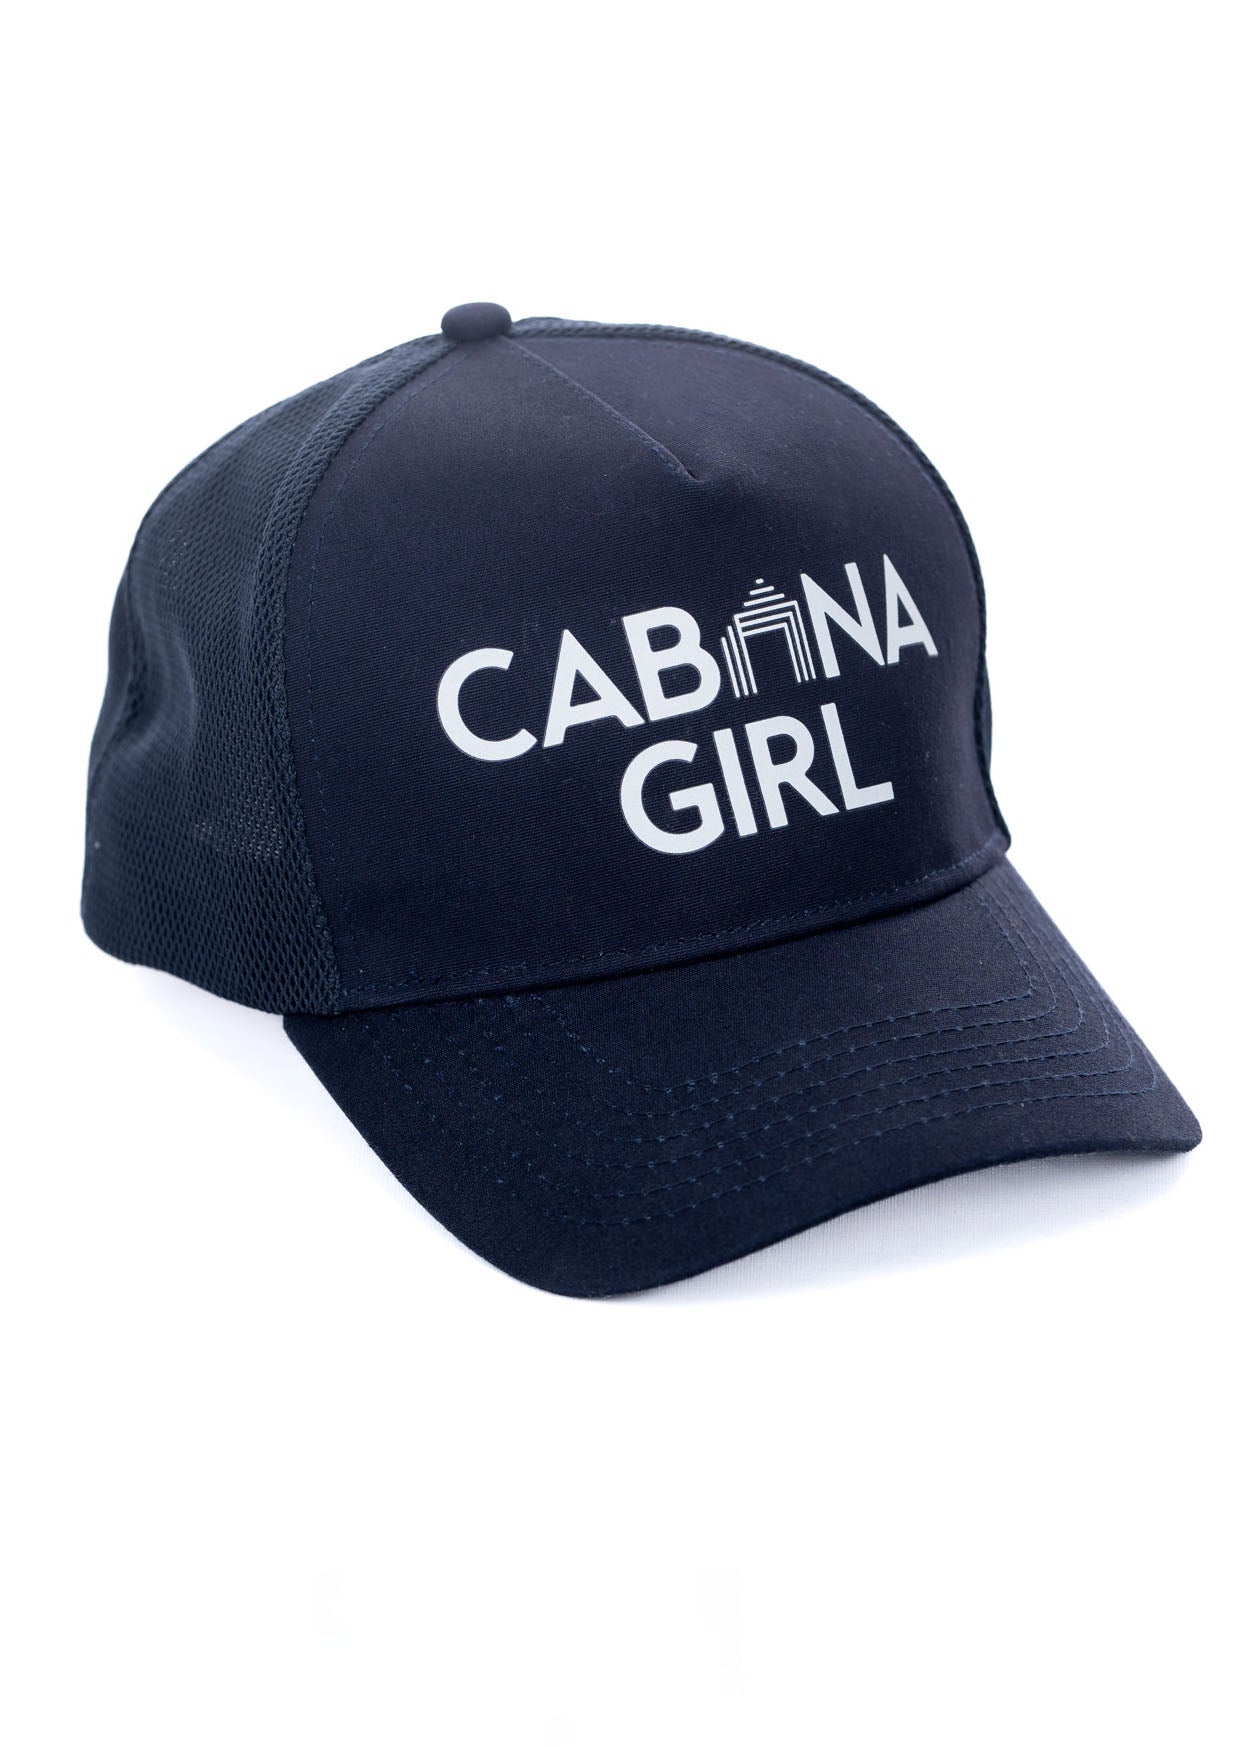 Navy Cabana Girl Hat on white background.